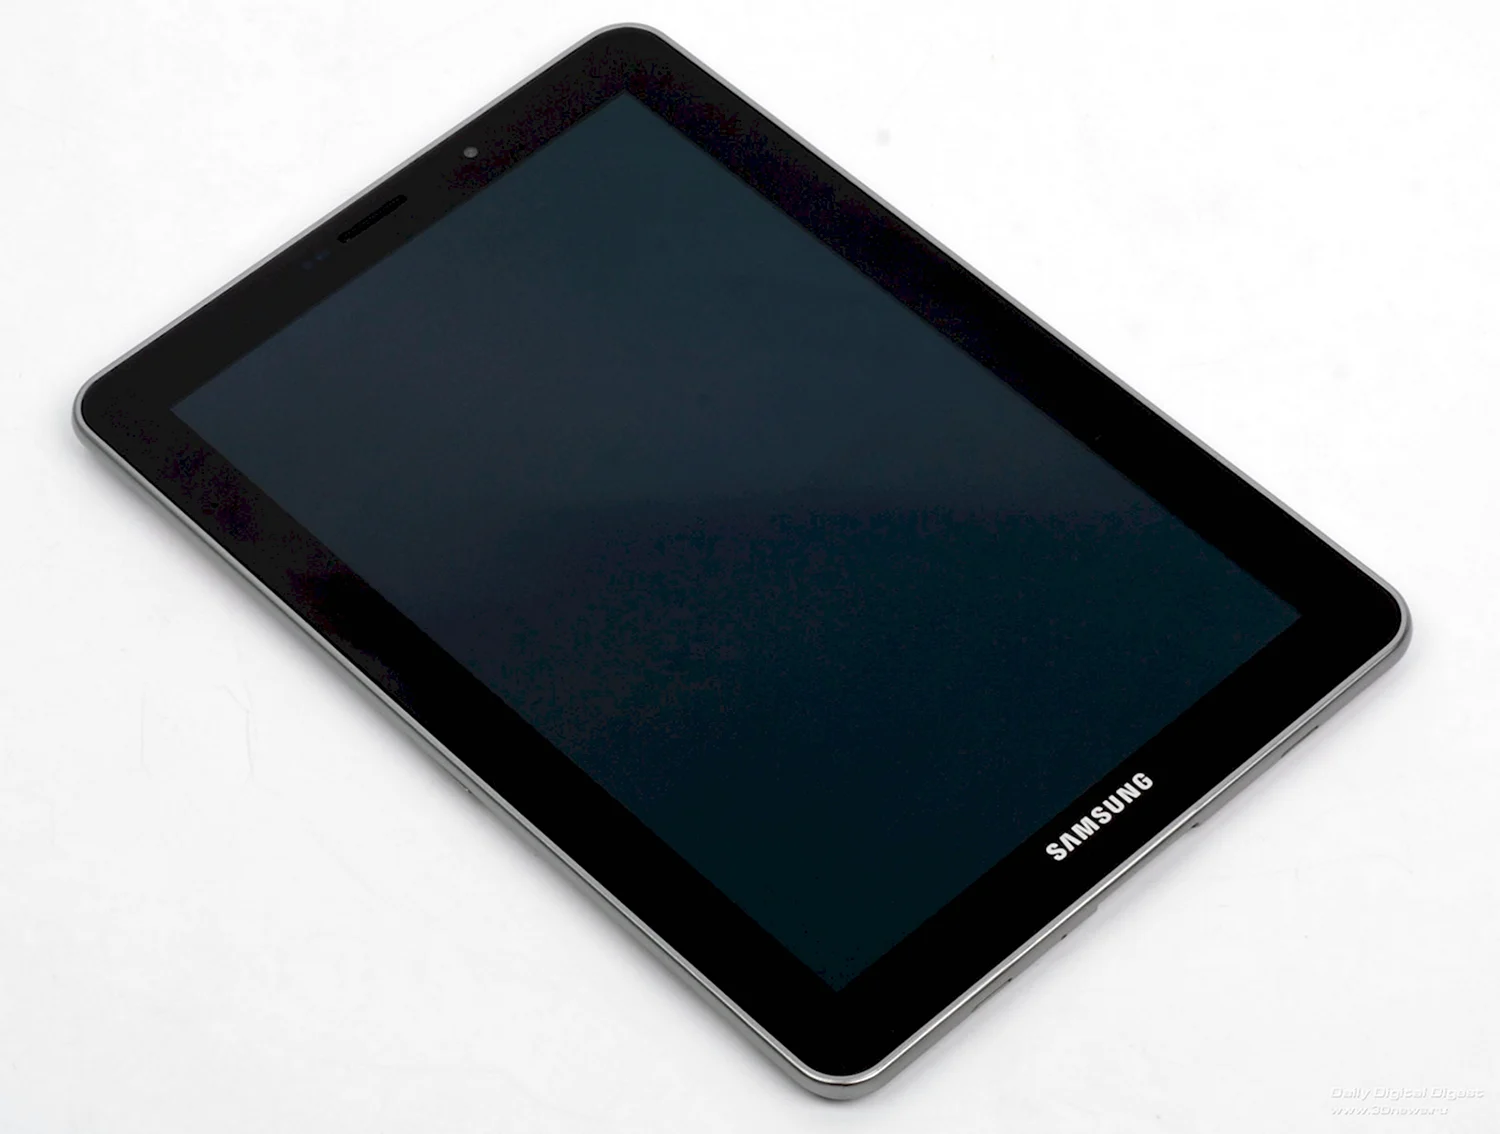 Samsung Galaxy Tab 7.7 p6800